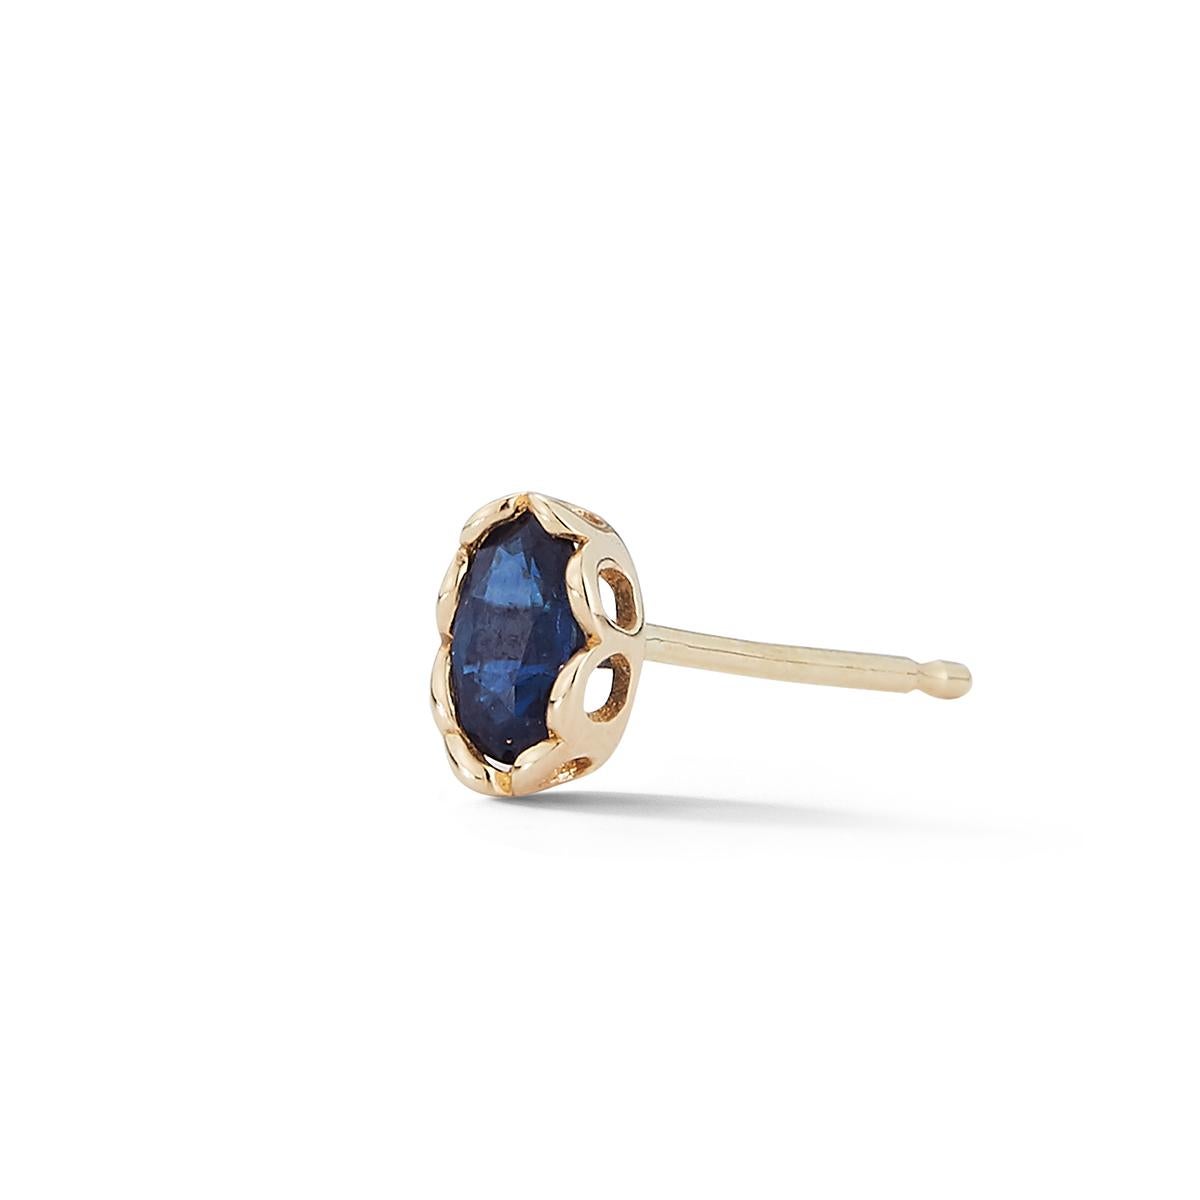 Saphir bleu de forme ovale serti dans une monture ouverte festonnée.
Facile à porter, elle est idéale à mélanger avec vos boucles d'oreilles préférées pour actualiser votre look
jeu d'oreilles. Vendu comme une boucle d'oreille UNIQUE, obtenez-en